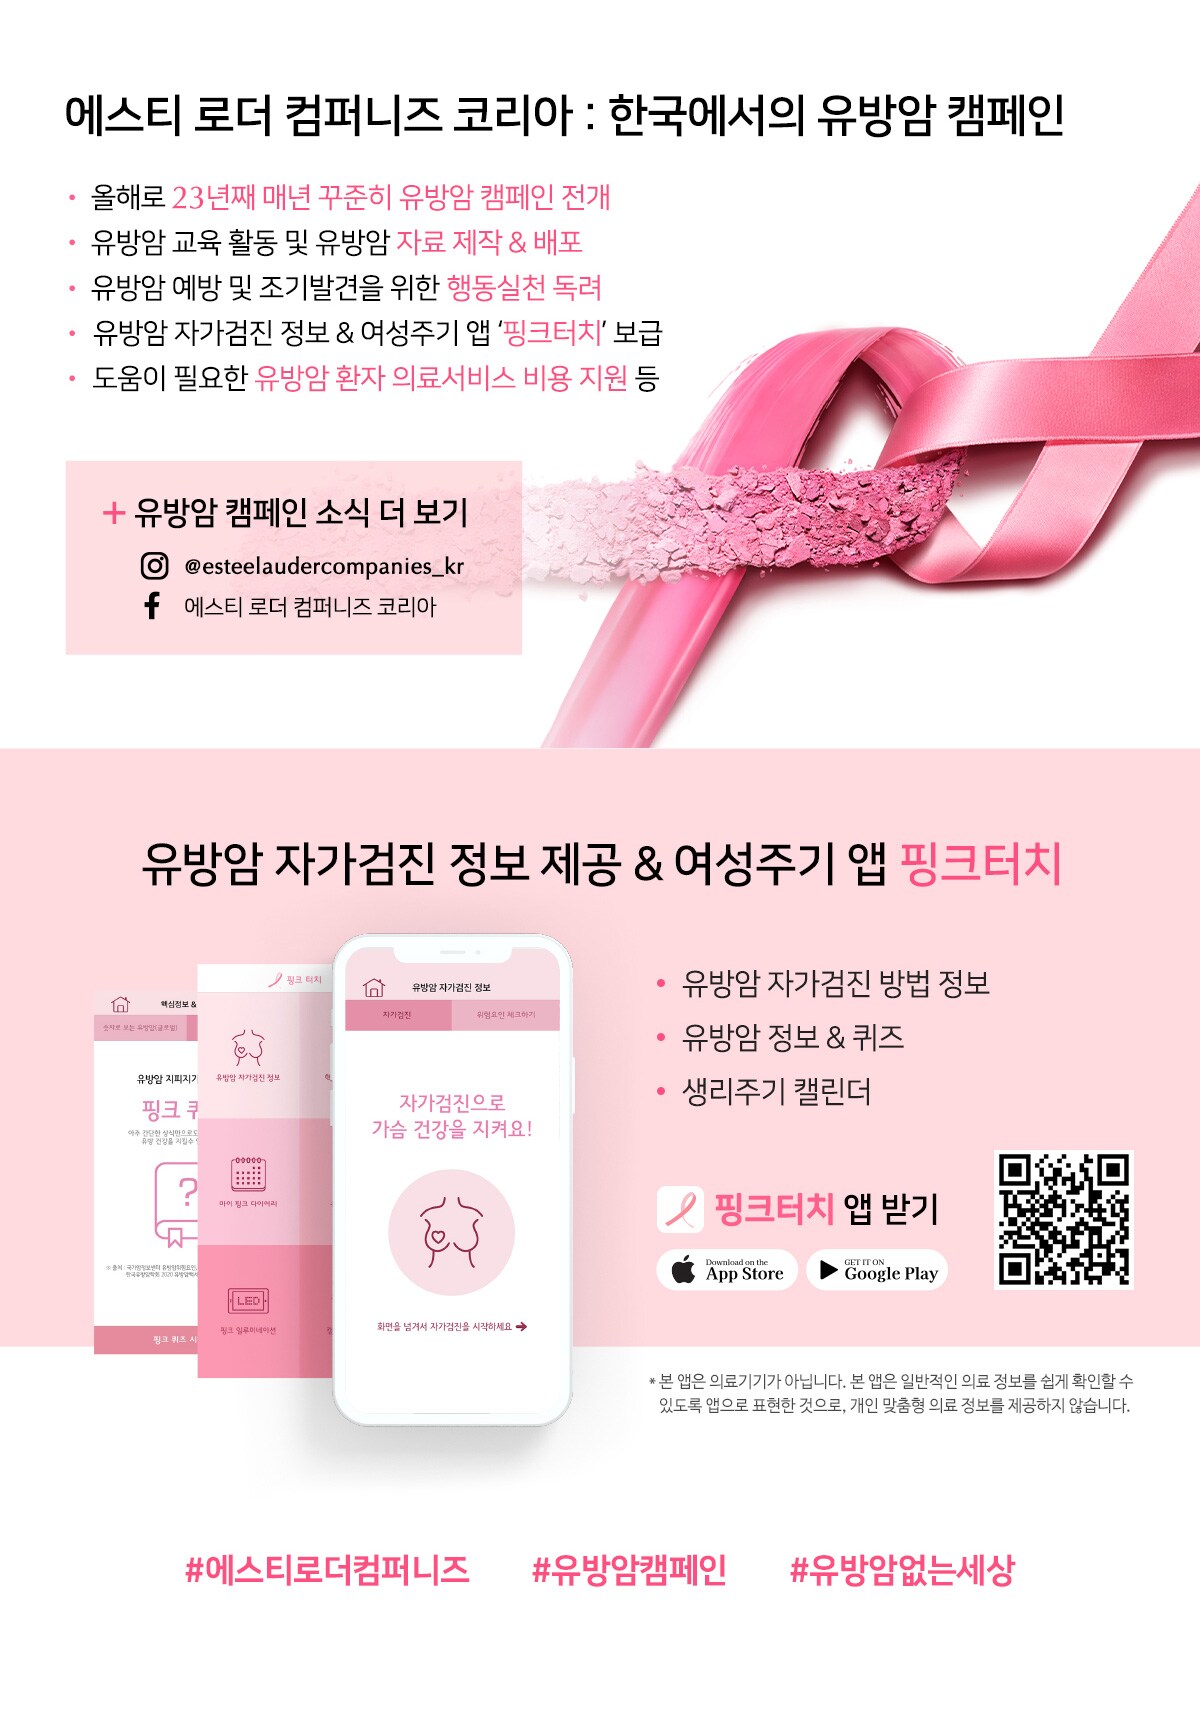 에스티 로더 컴퍼니즈 코리아 한국에서의 유방암 캠페인